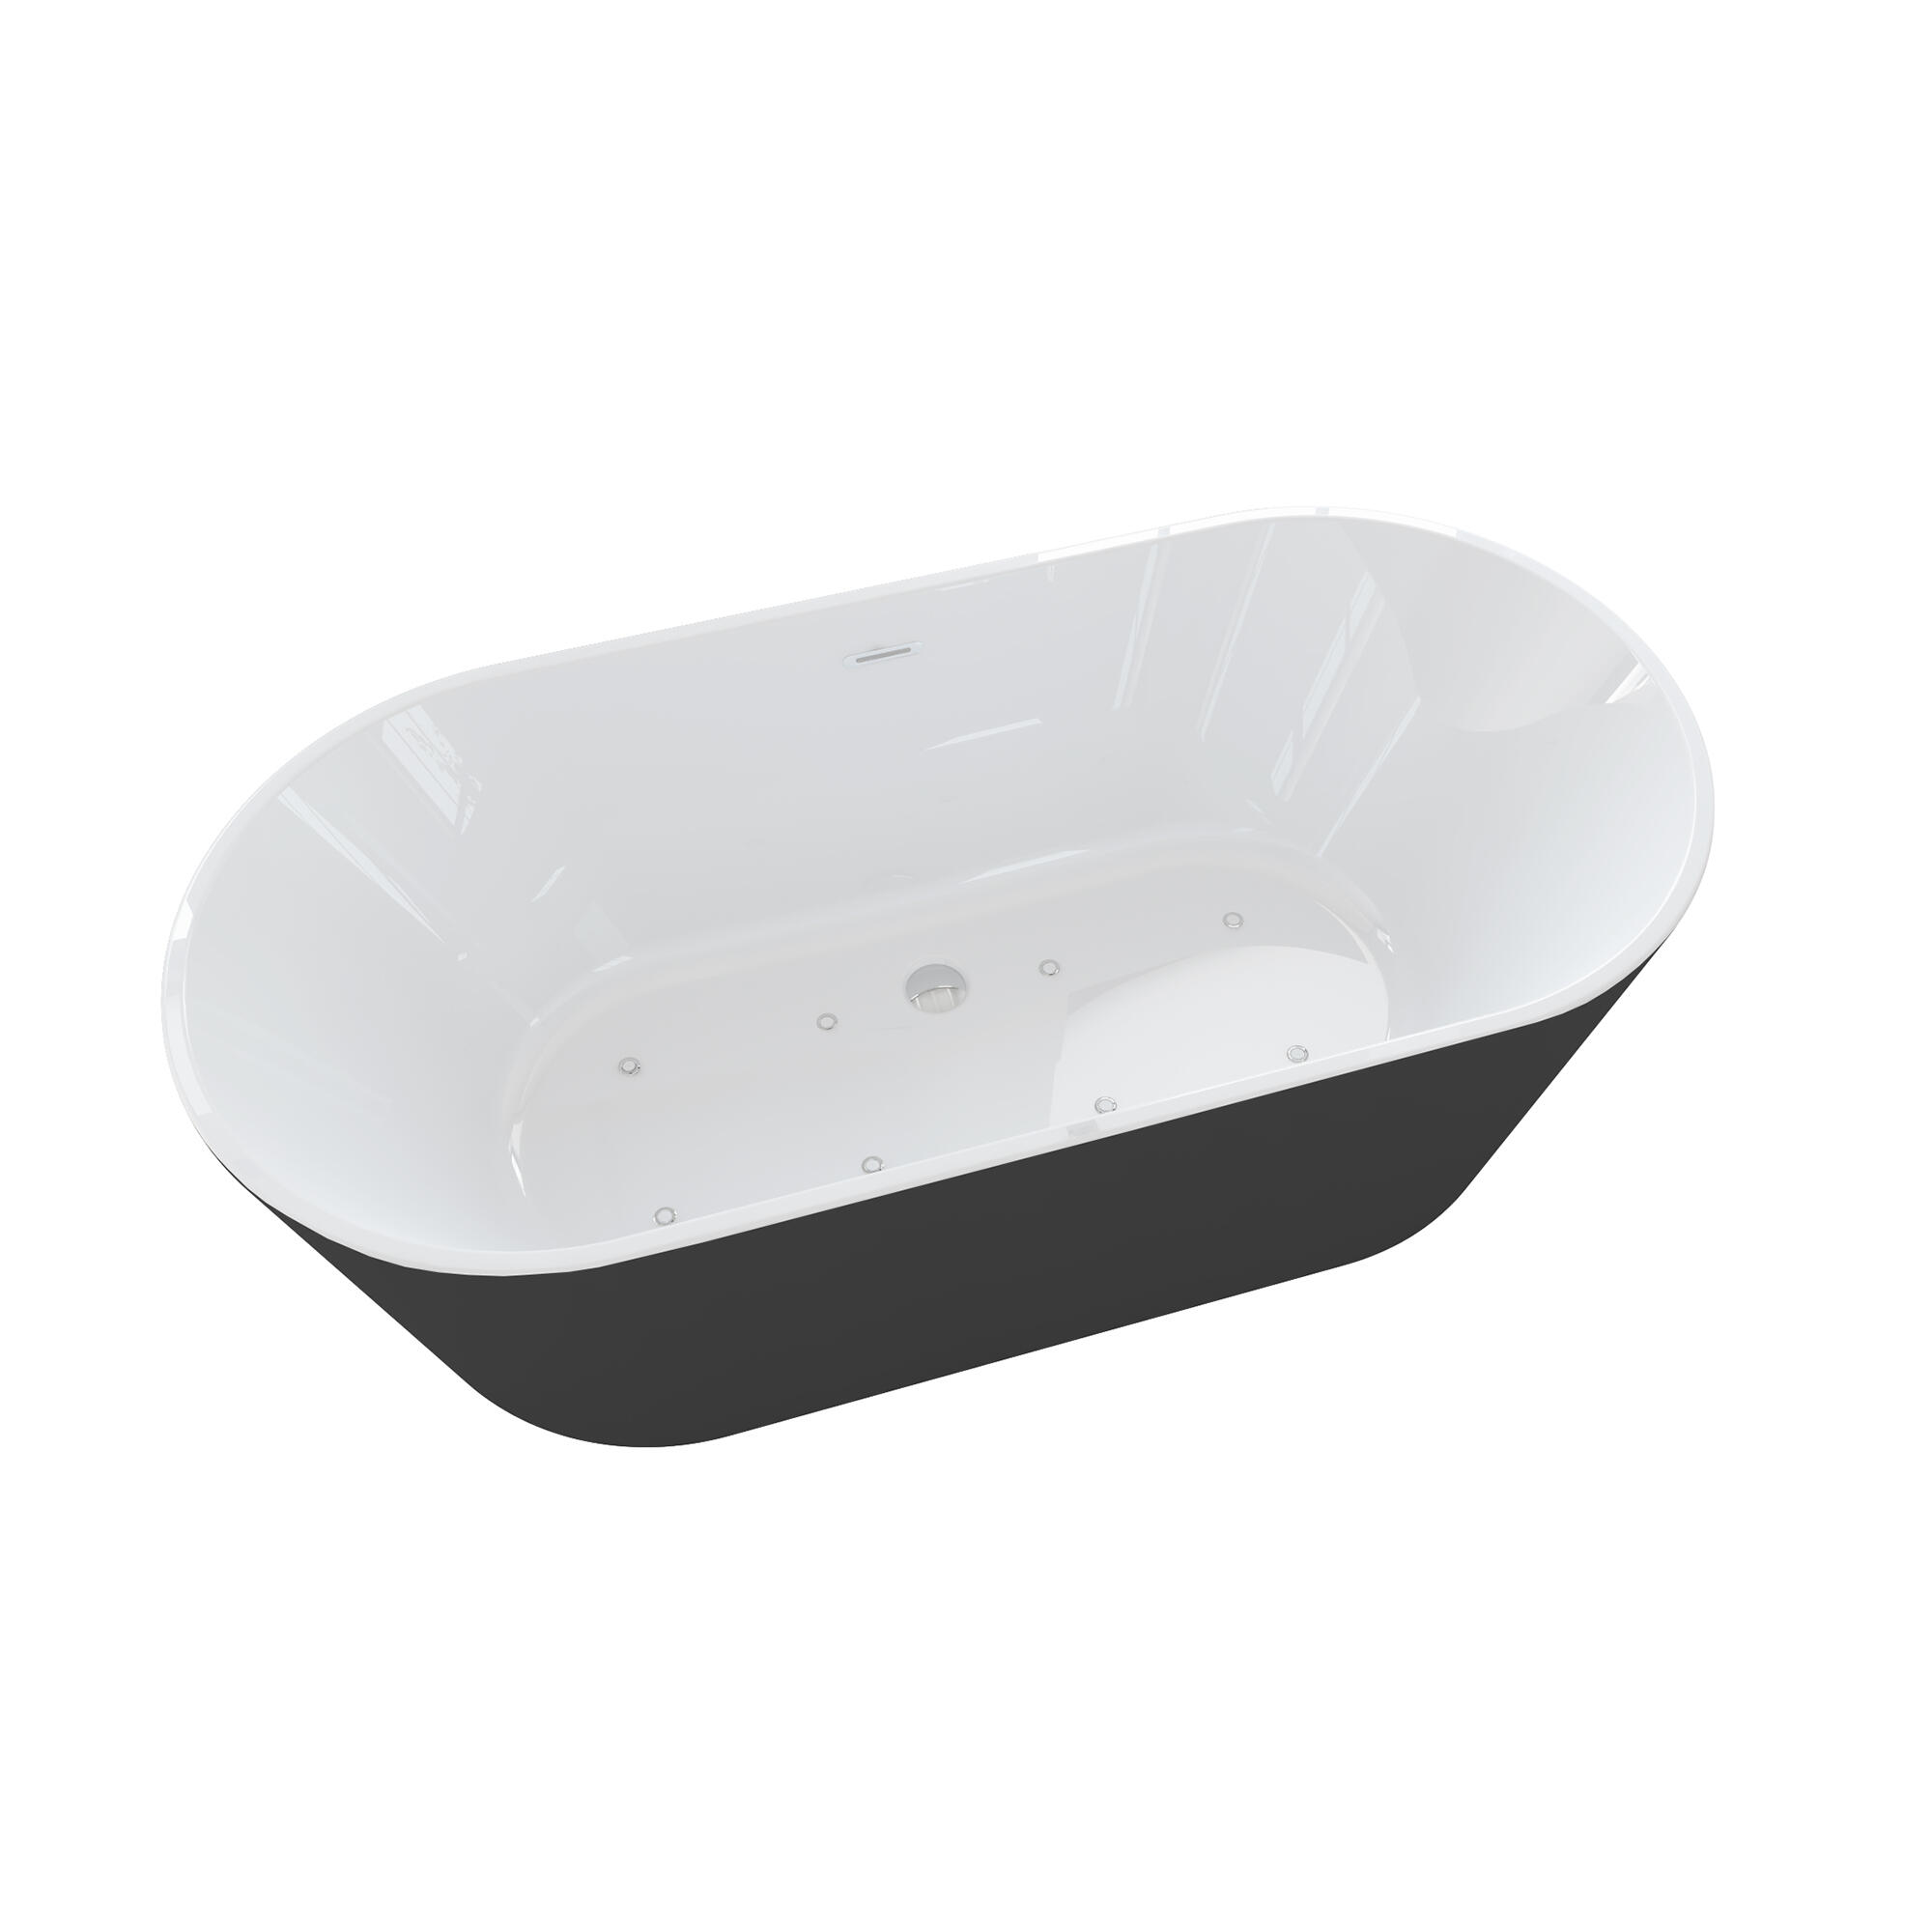 Bañera con hidromasaje sanycces diane blanco y negro 170x80 cm